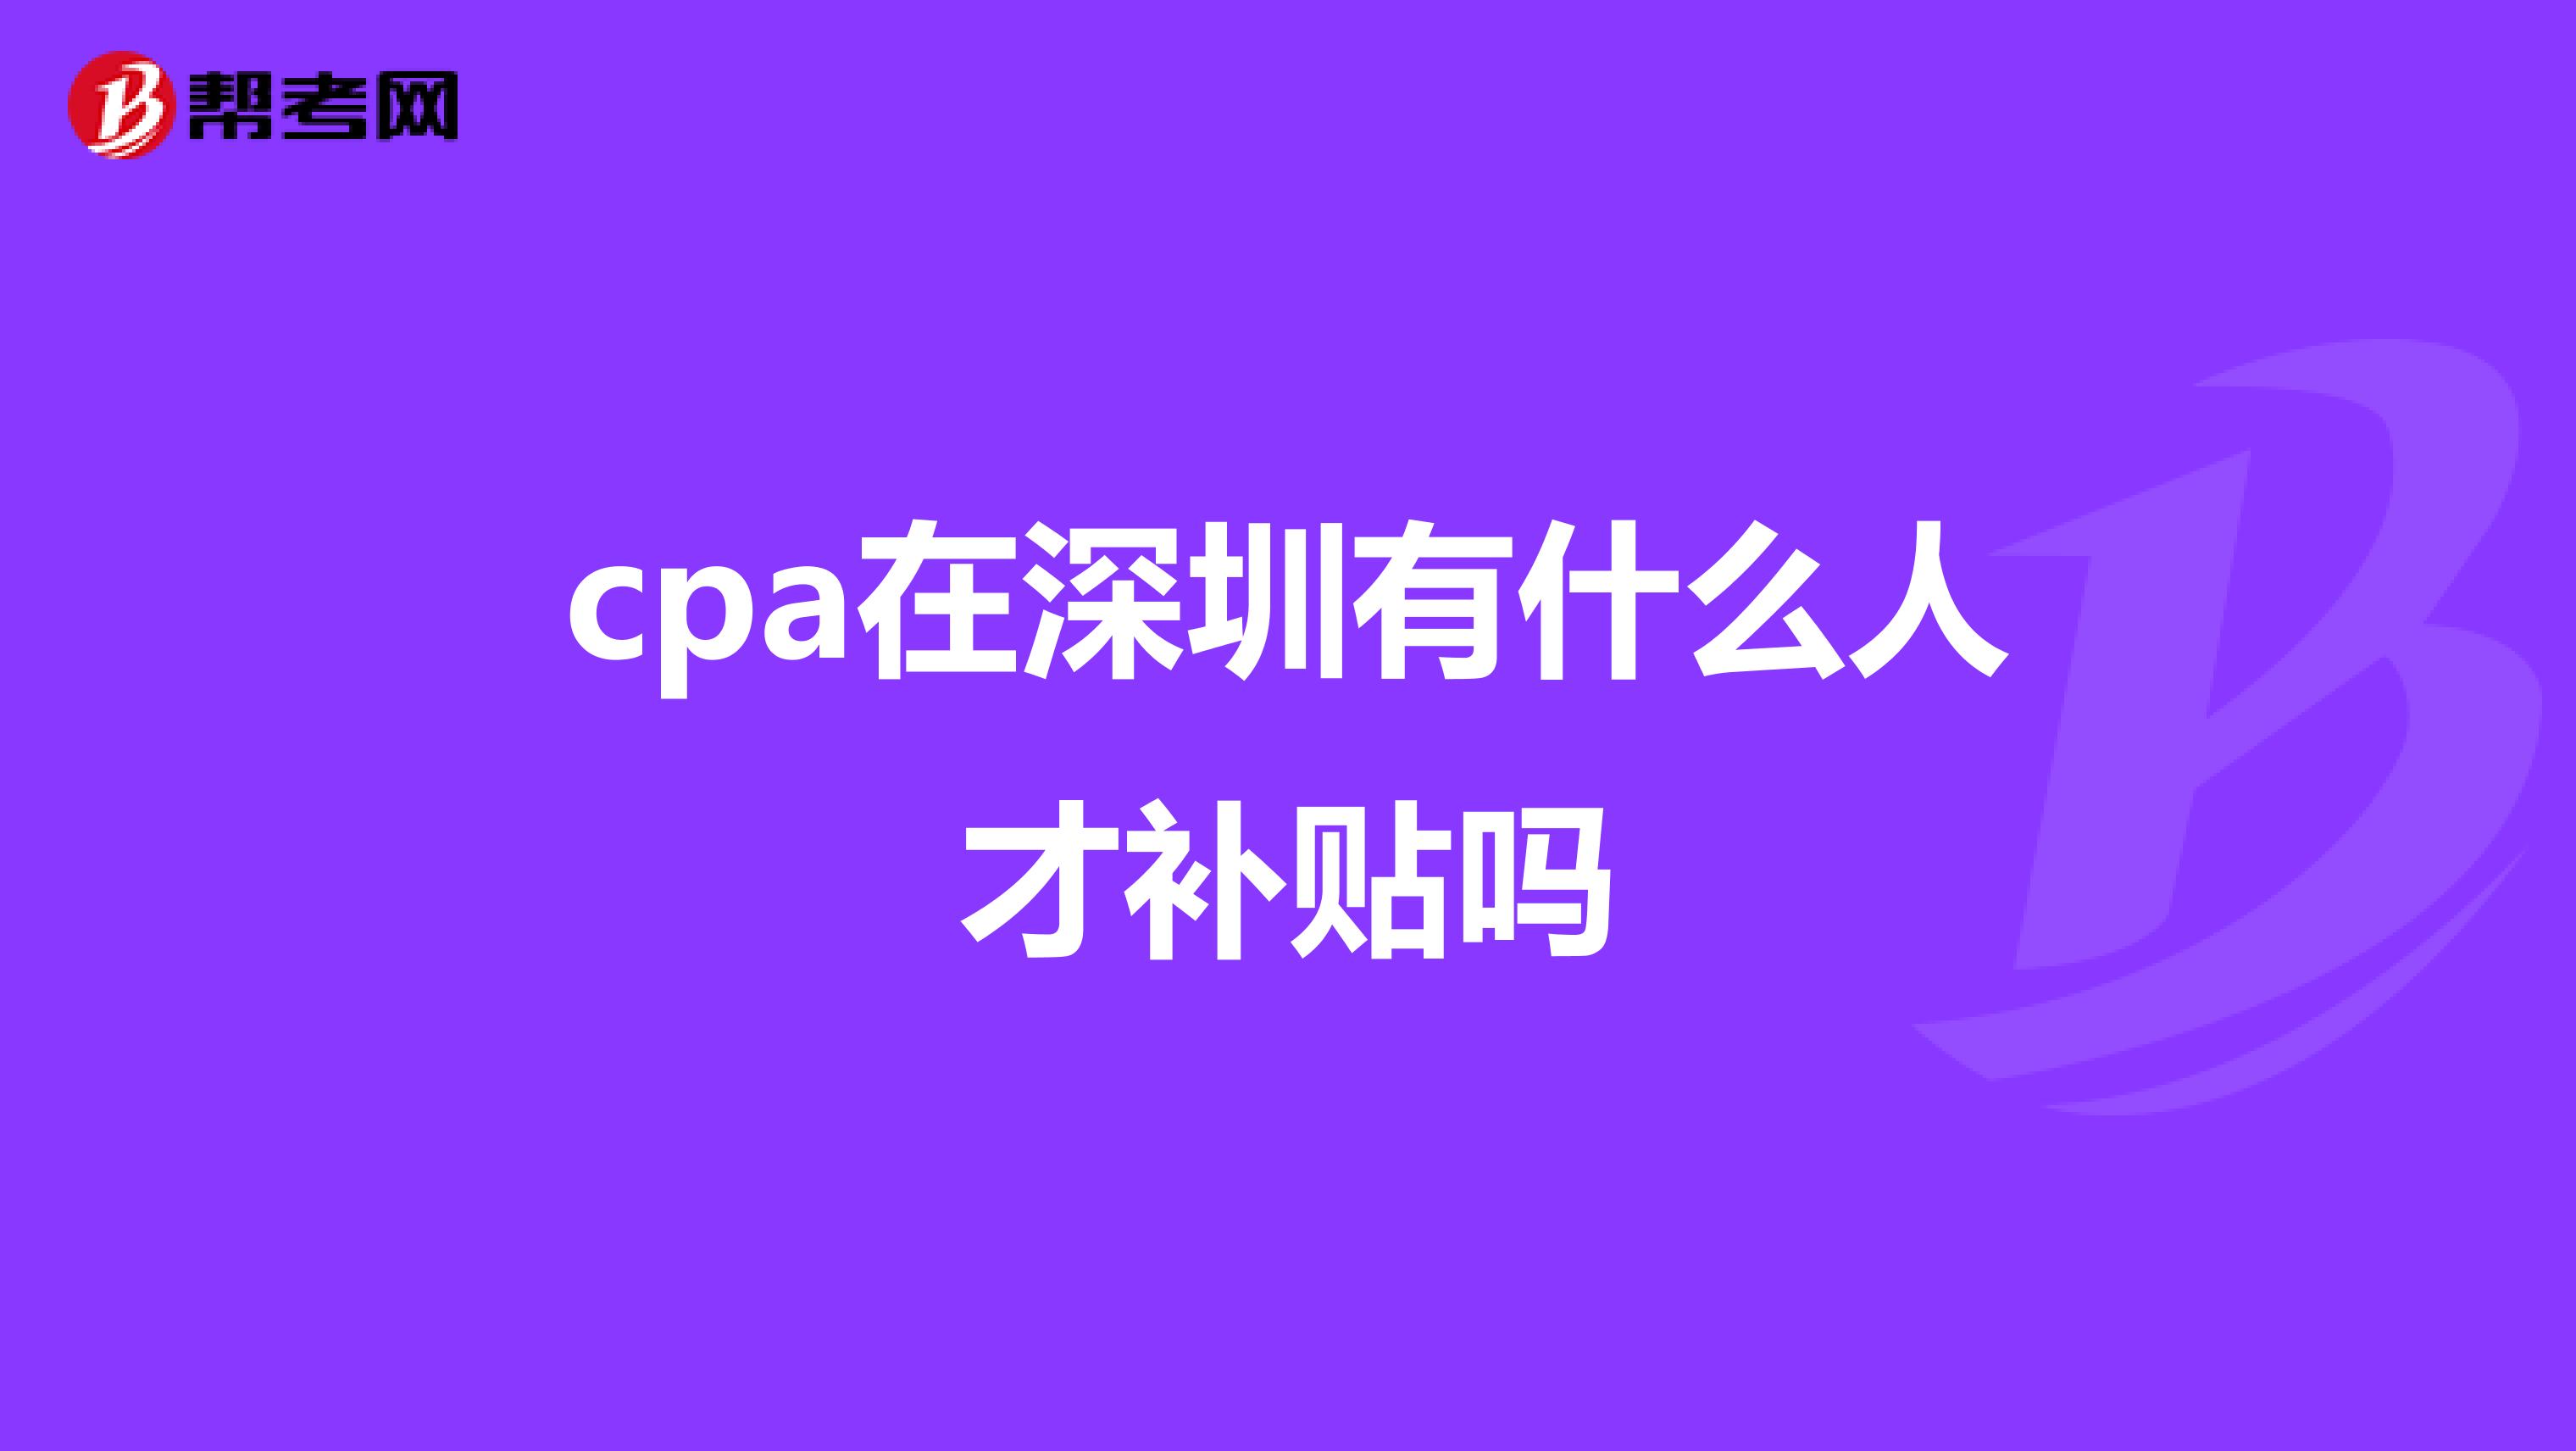 cpa在深圳有什么人才补贴吗